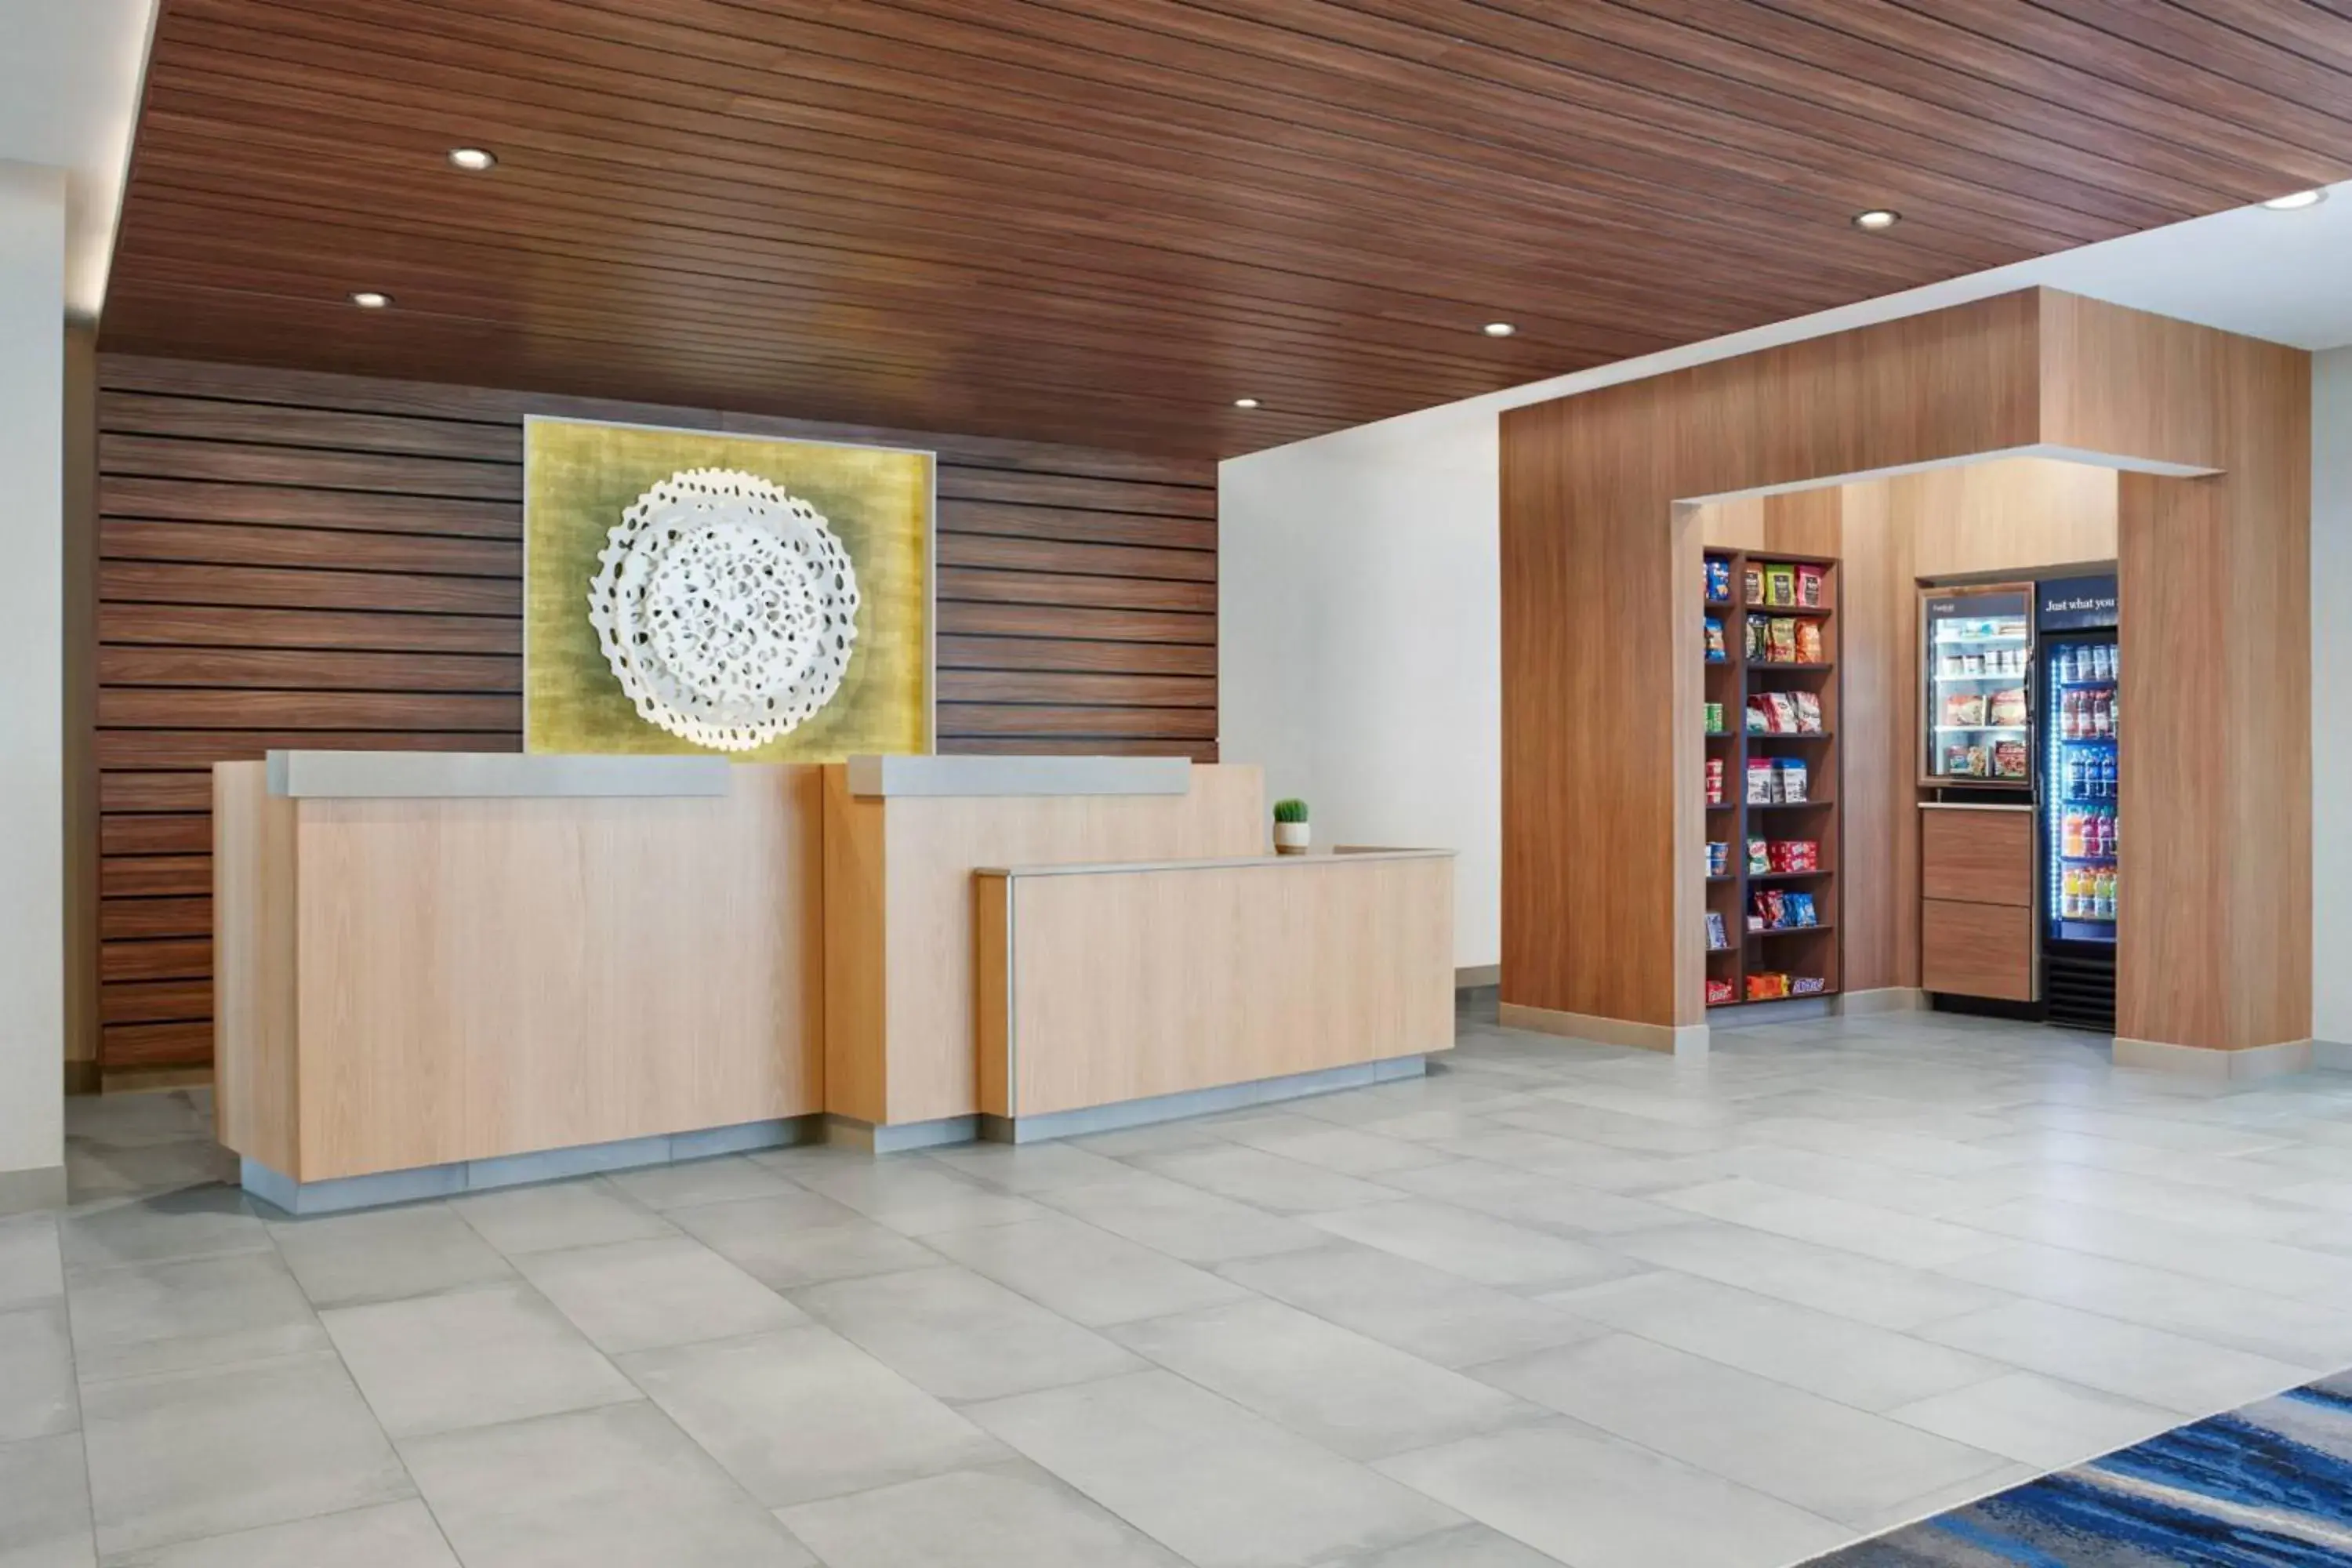 Lobby or reception, Lobby/Reception in Fairfield by Marriott Inn & Suites Stockton Lathrop